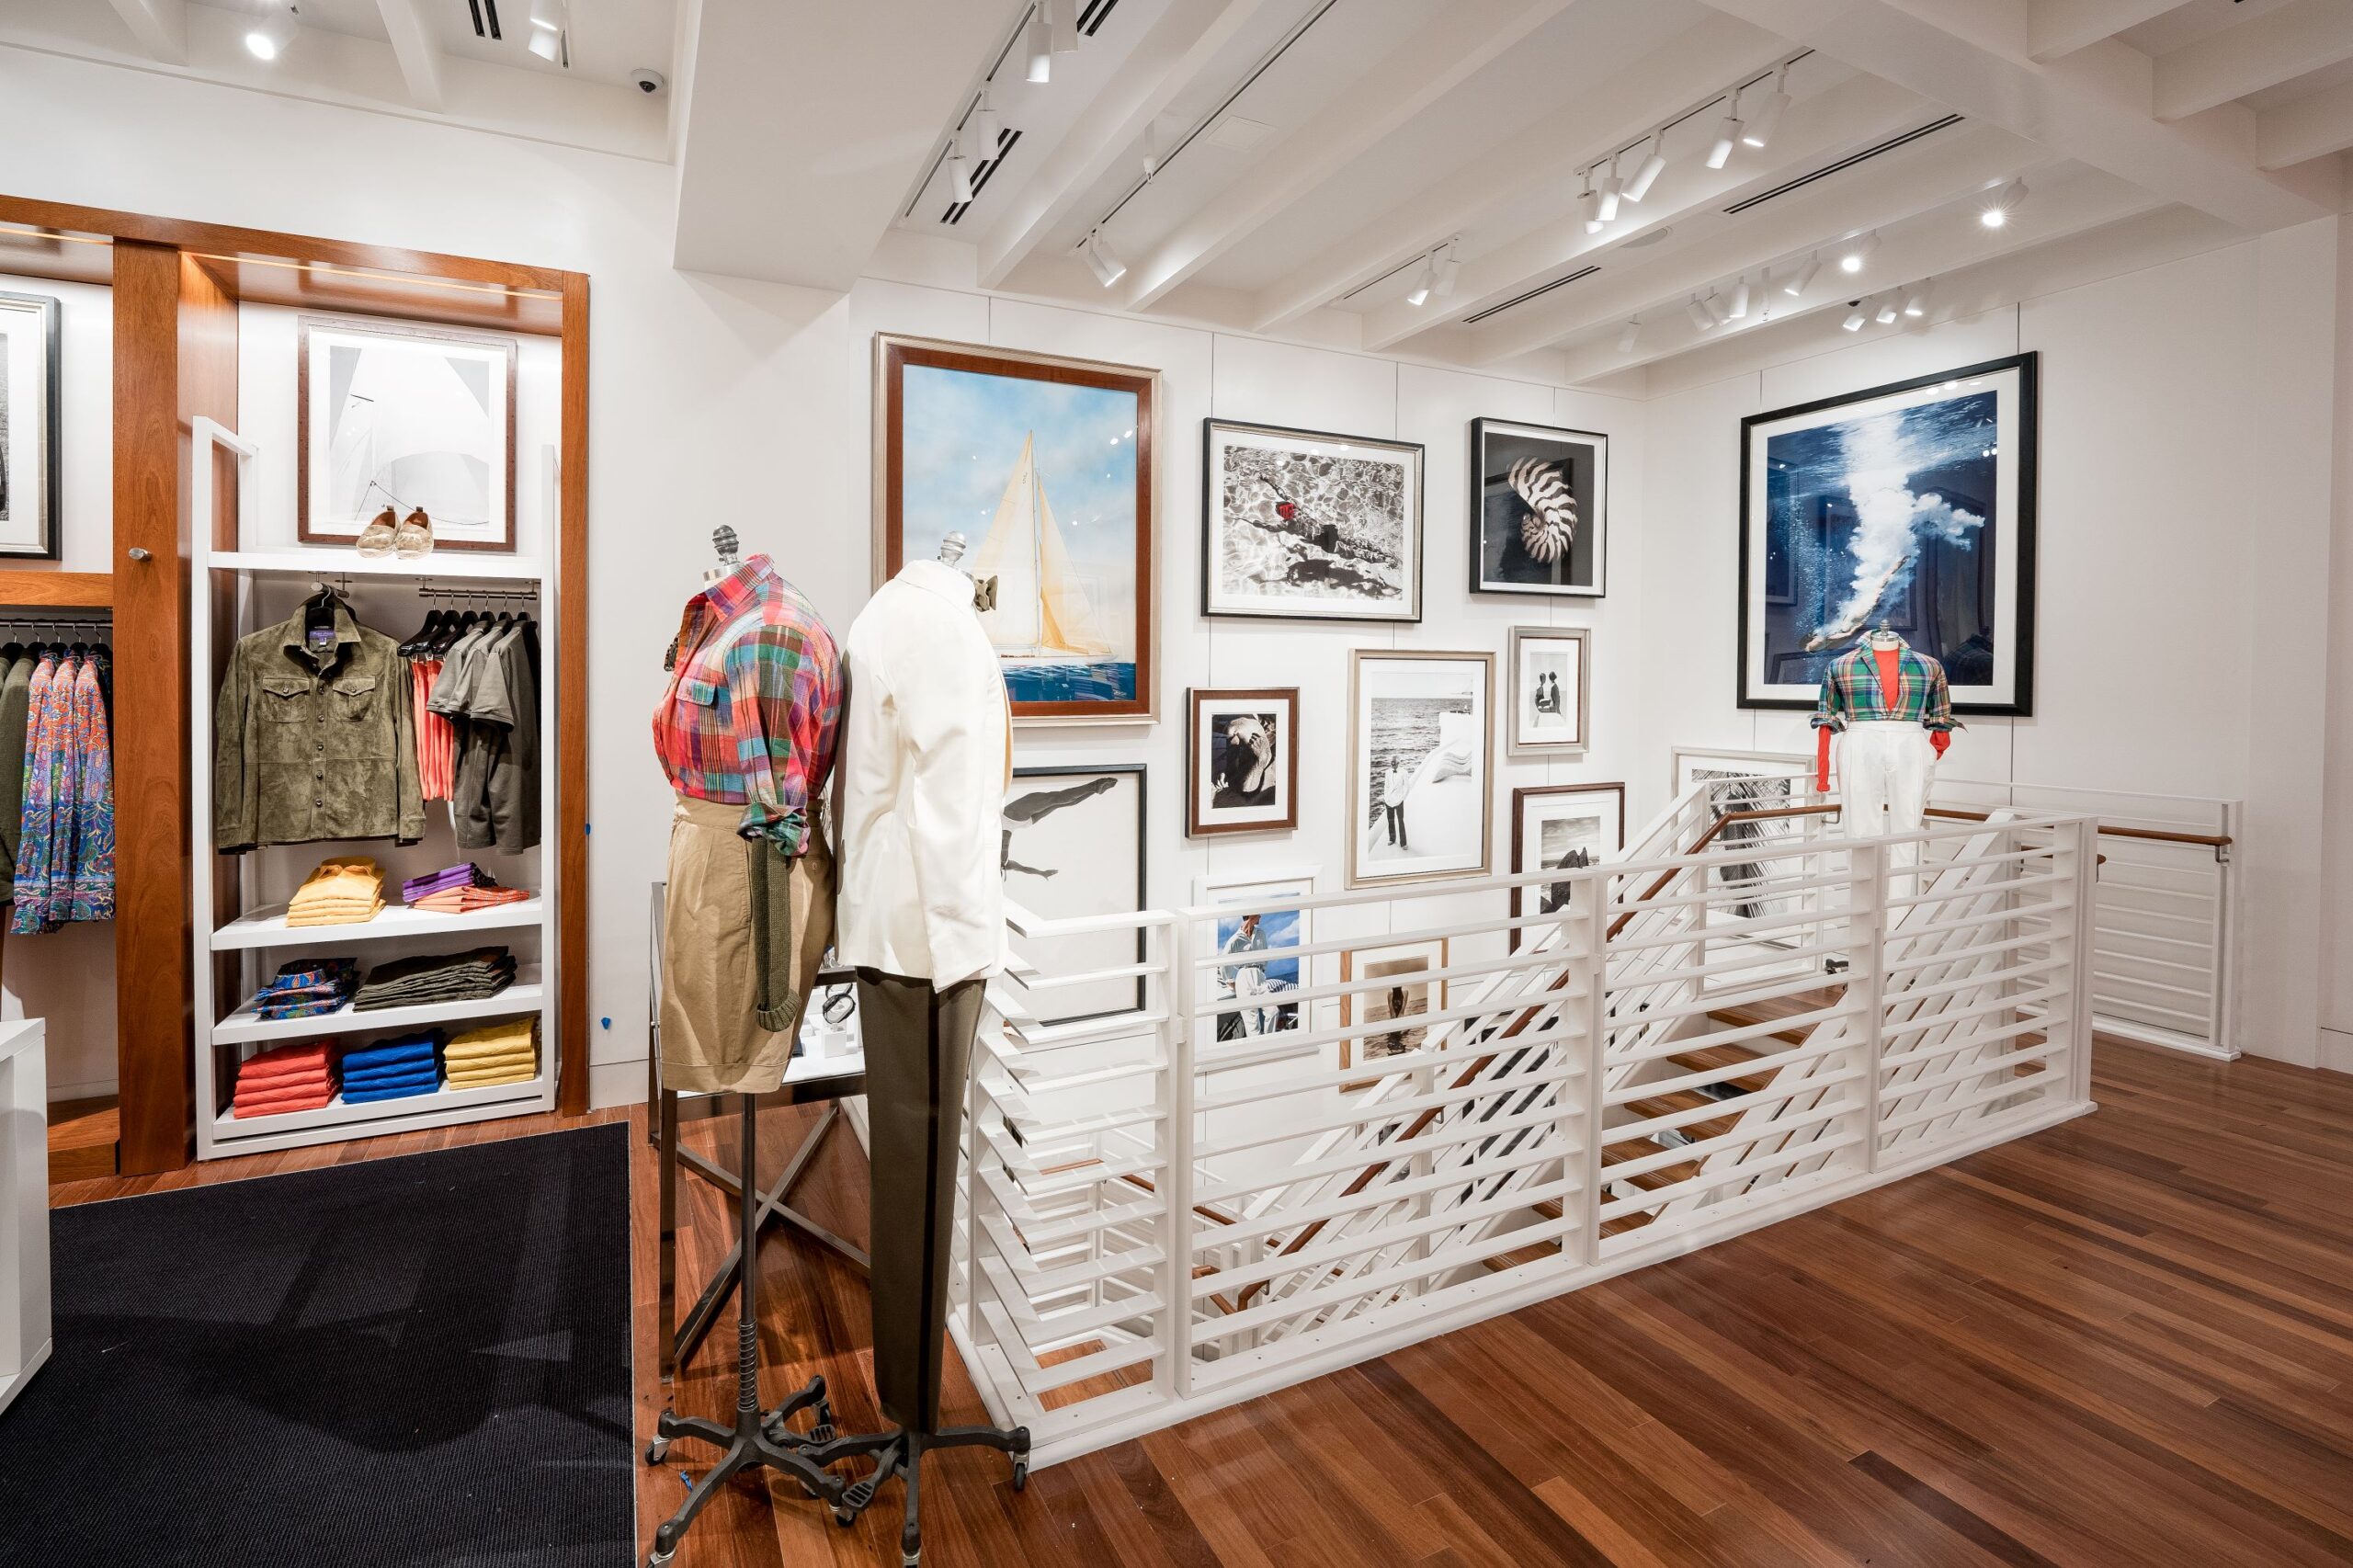 Ralph Lauren Opens Luxury Store in Miami's Design District – WWD